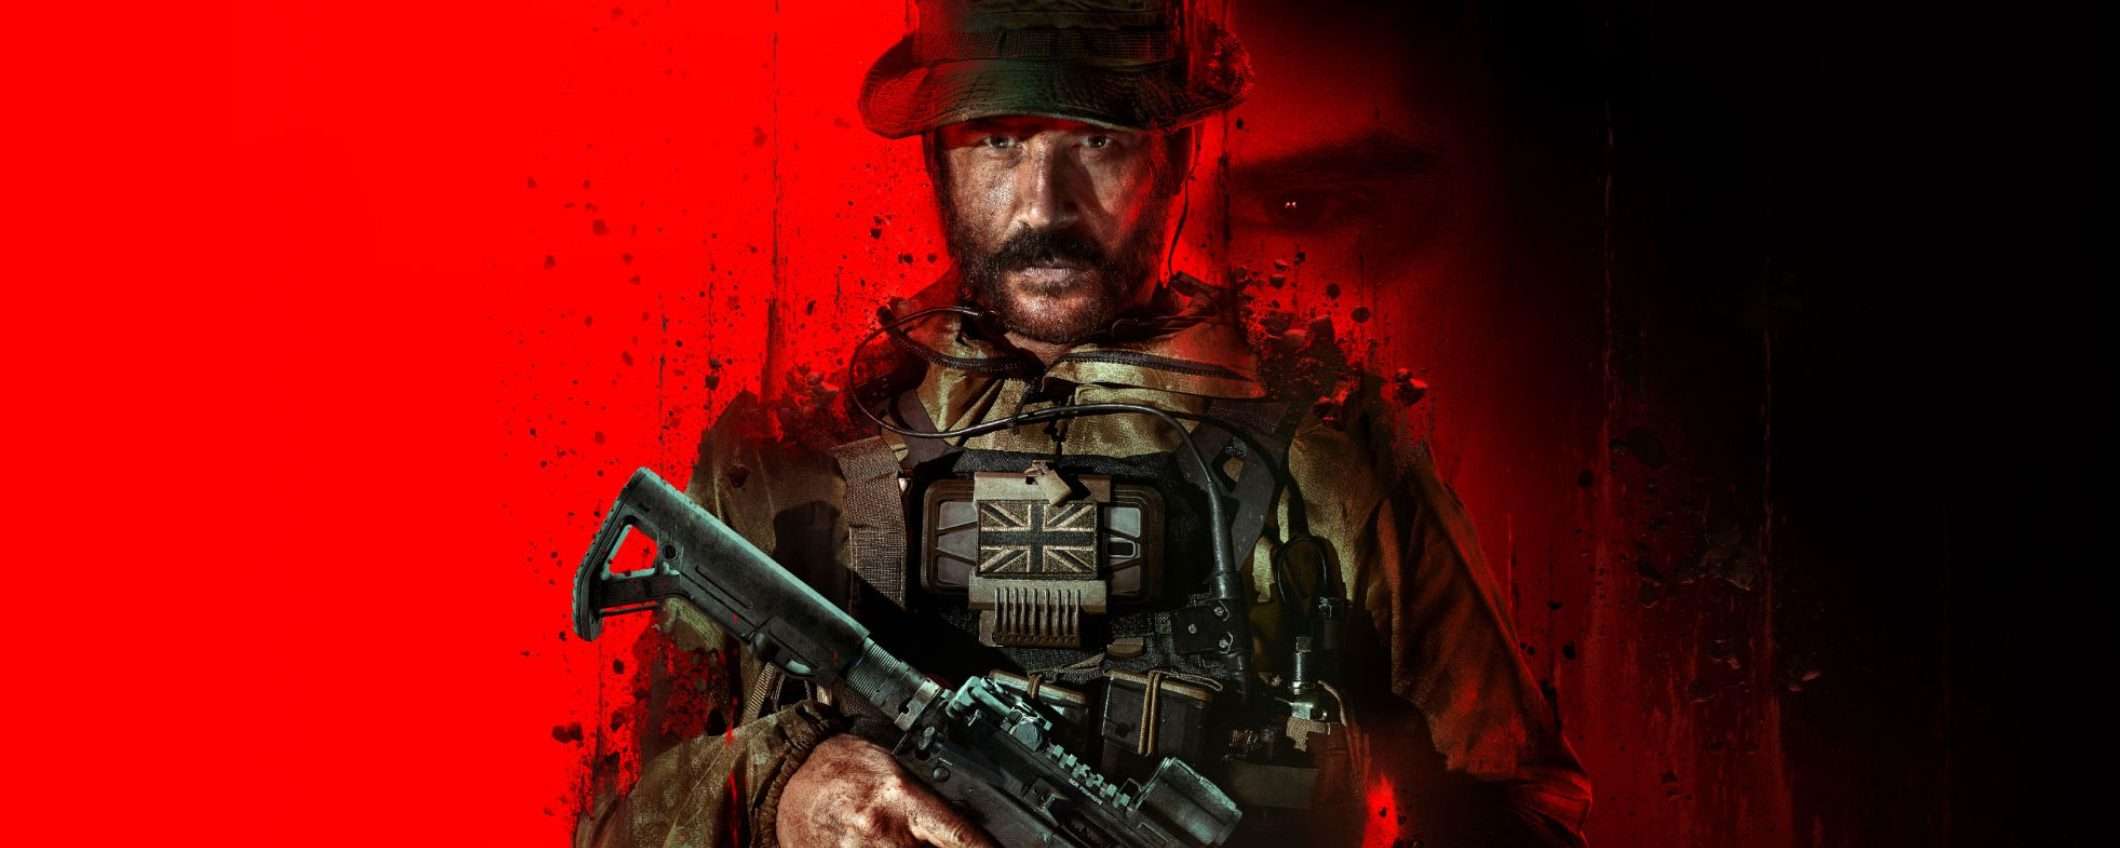 Call of Duty Modern Warfare 3 è in sconto ECCEZIONALE su Kinguin